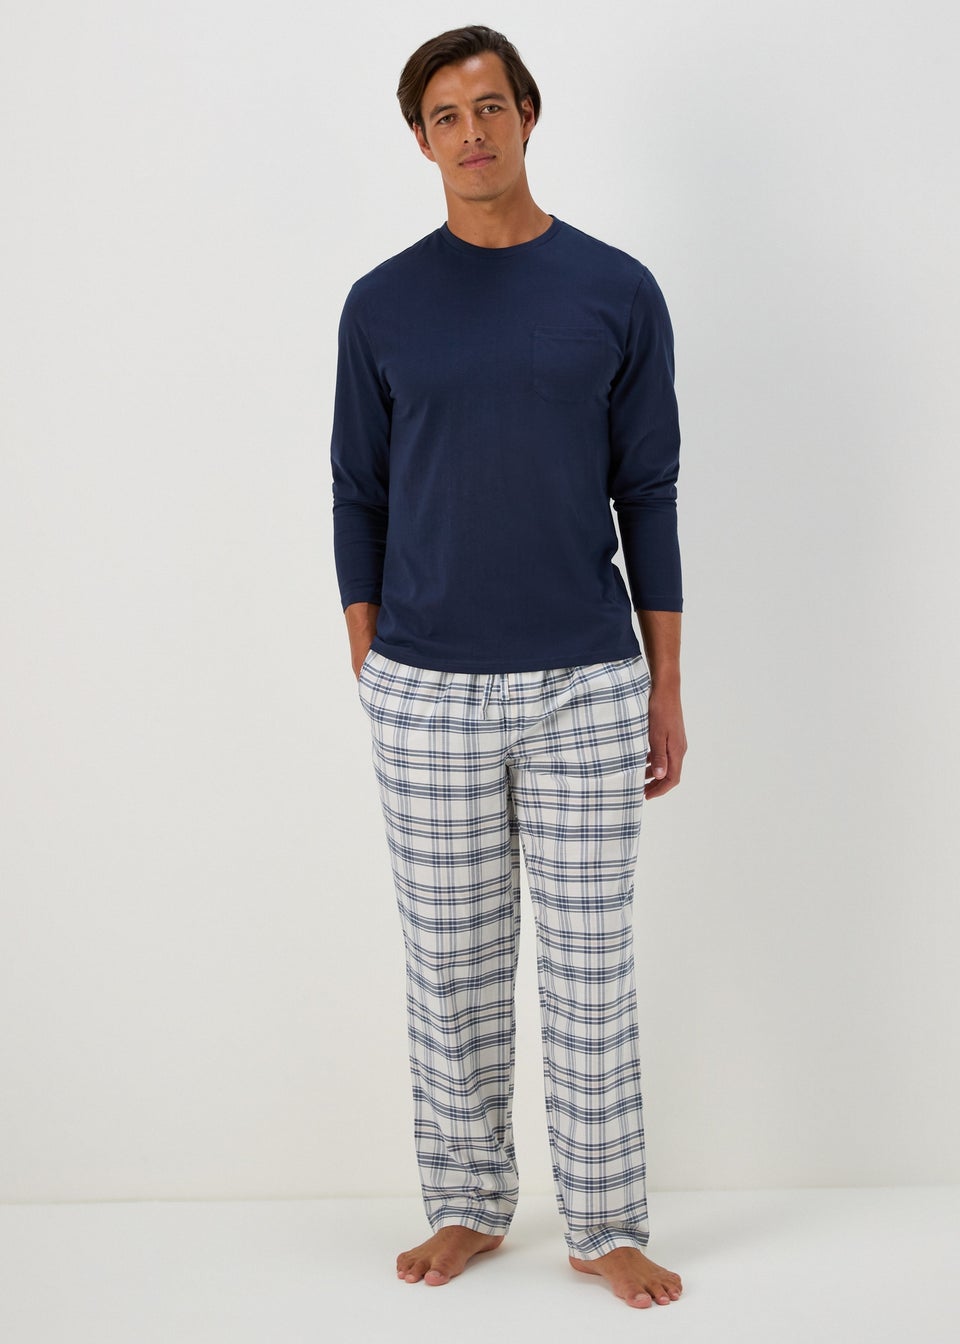 Navy Long Sleeve Pyjama Set - Matalan